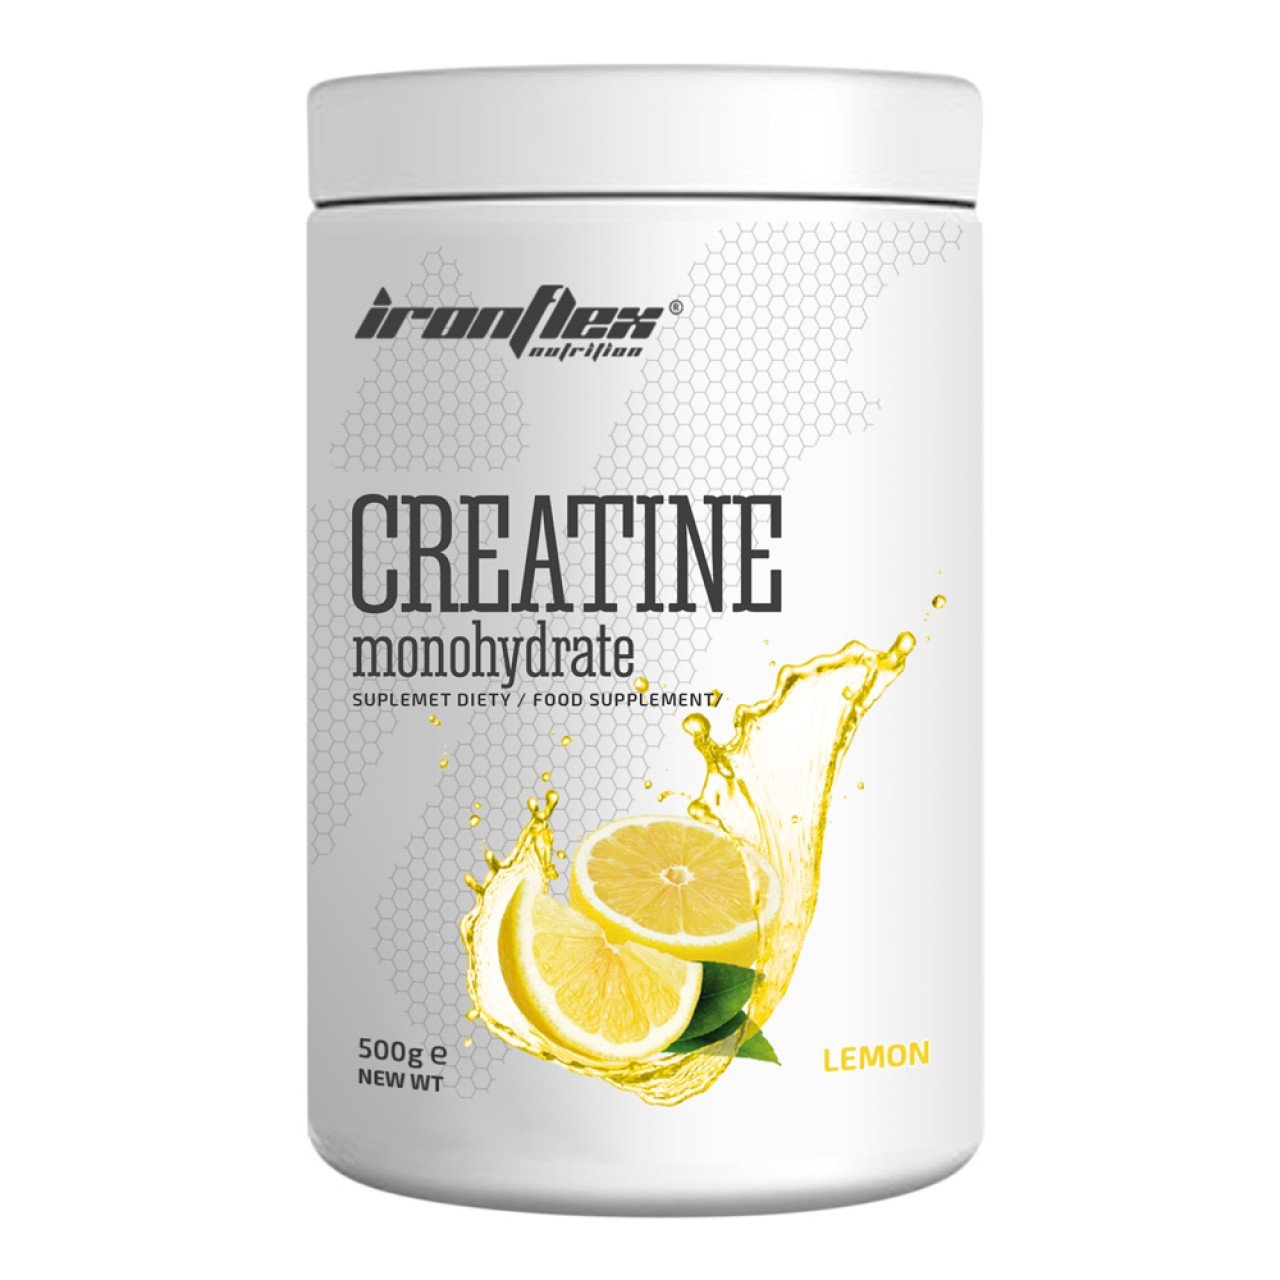 Креатин моногидрат Iron Flex Creatine monohydrate 500 грамм Лимон,  мл, IronFlex. Креатин моногидрат. Набор массы Энергия и выносливость Увеличение силы 